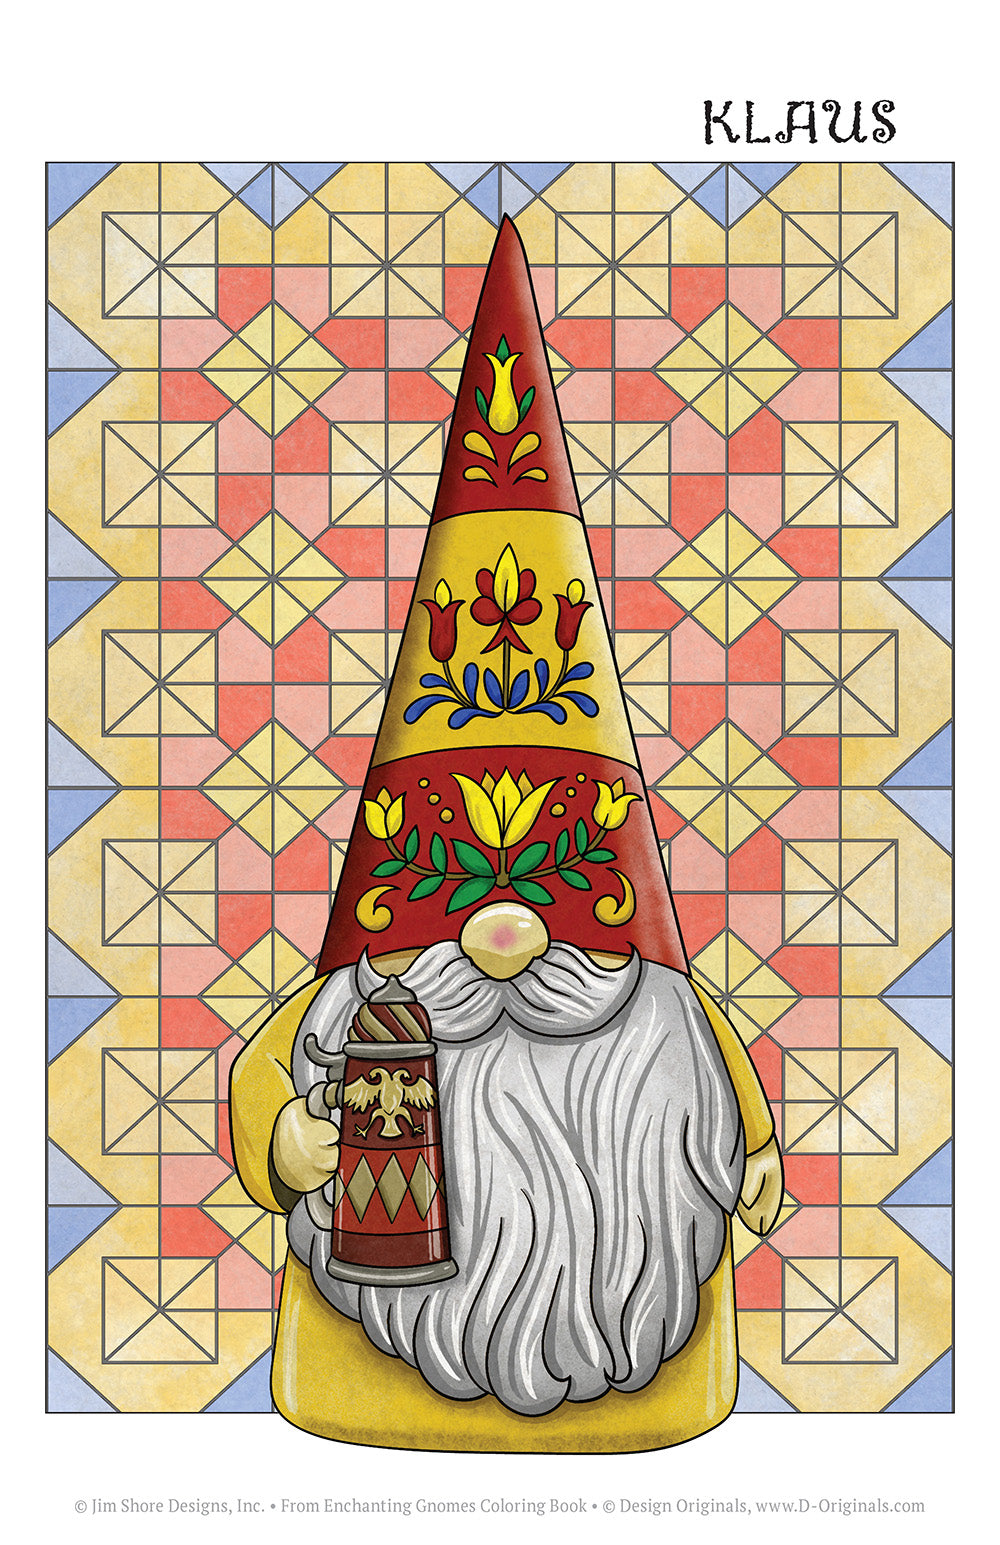 Jim Shore Enchanting Gnomes Coloring Book